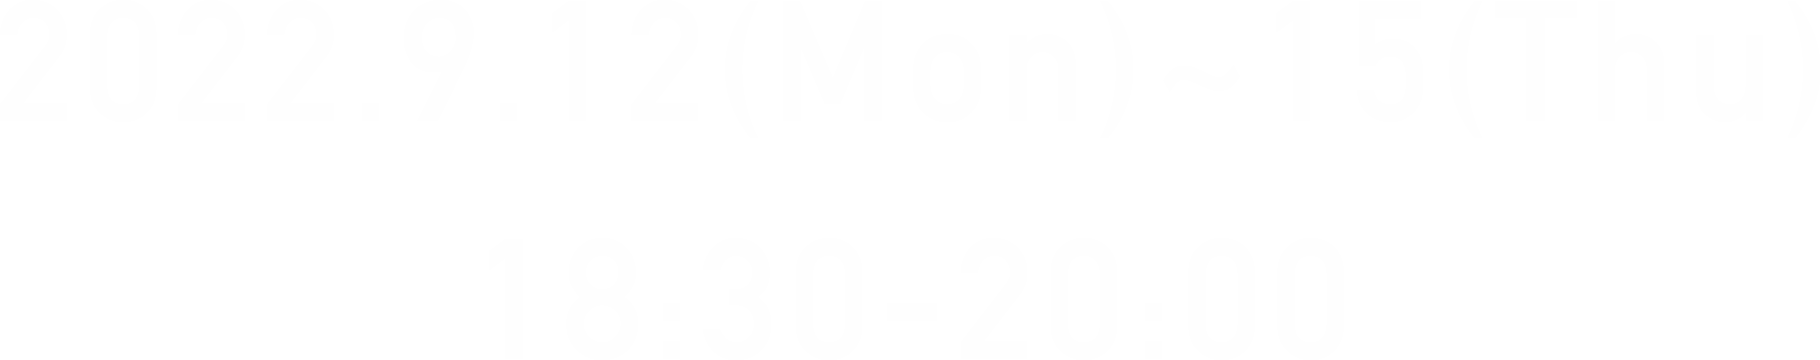 2022.9.12(Mon)~15(Thu) 18:30-20:00